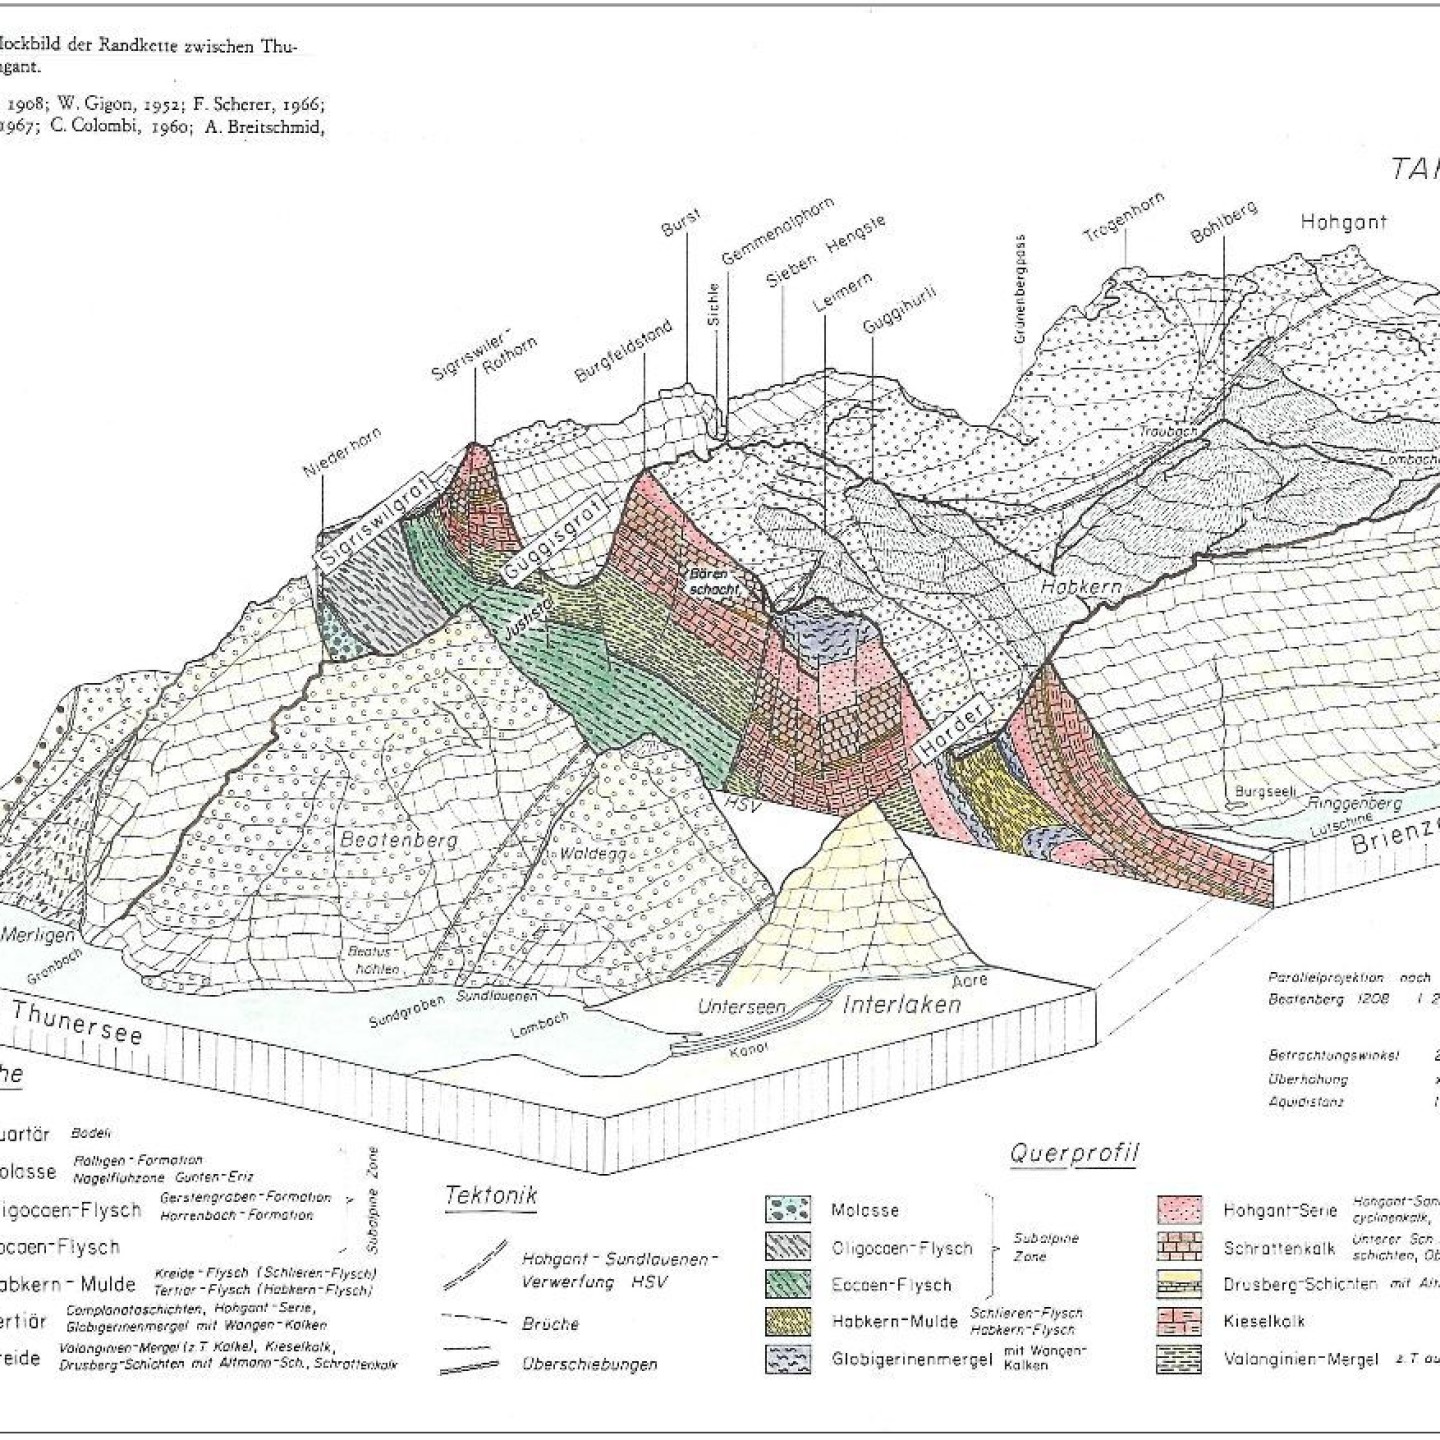 Geologisches-blockbild_beck-gigon-scherer-ziegler-colombi-breitschmid-e1537946184443